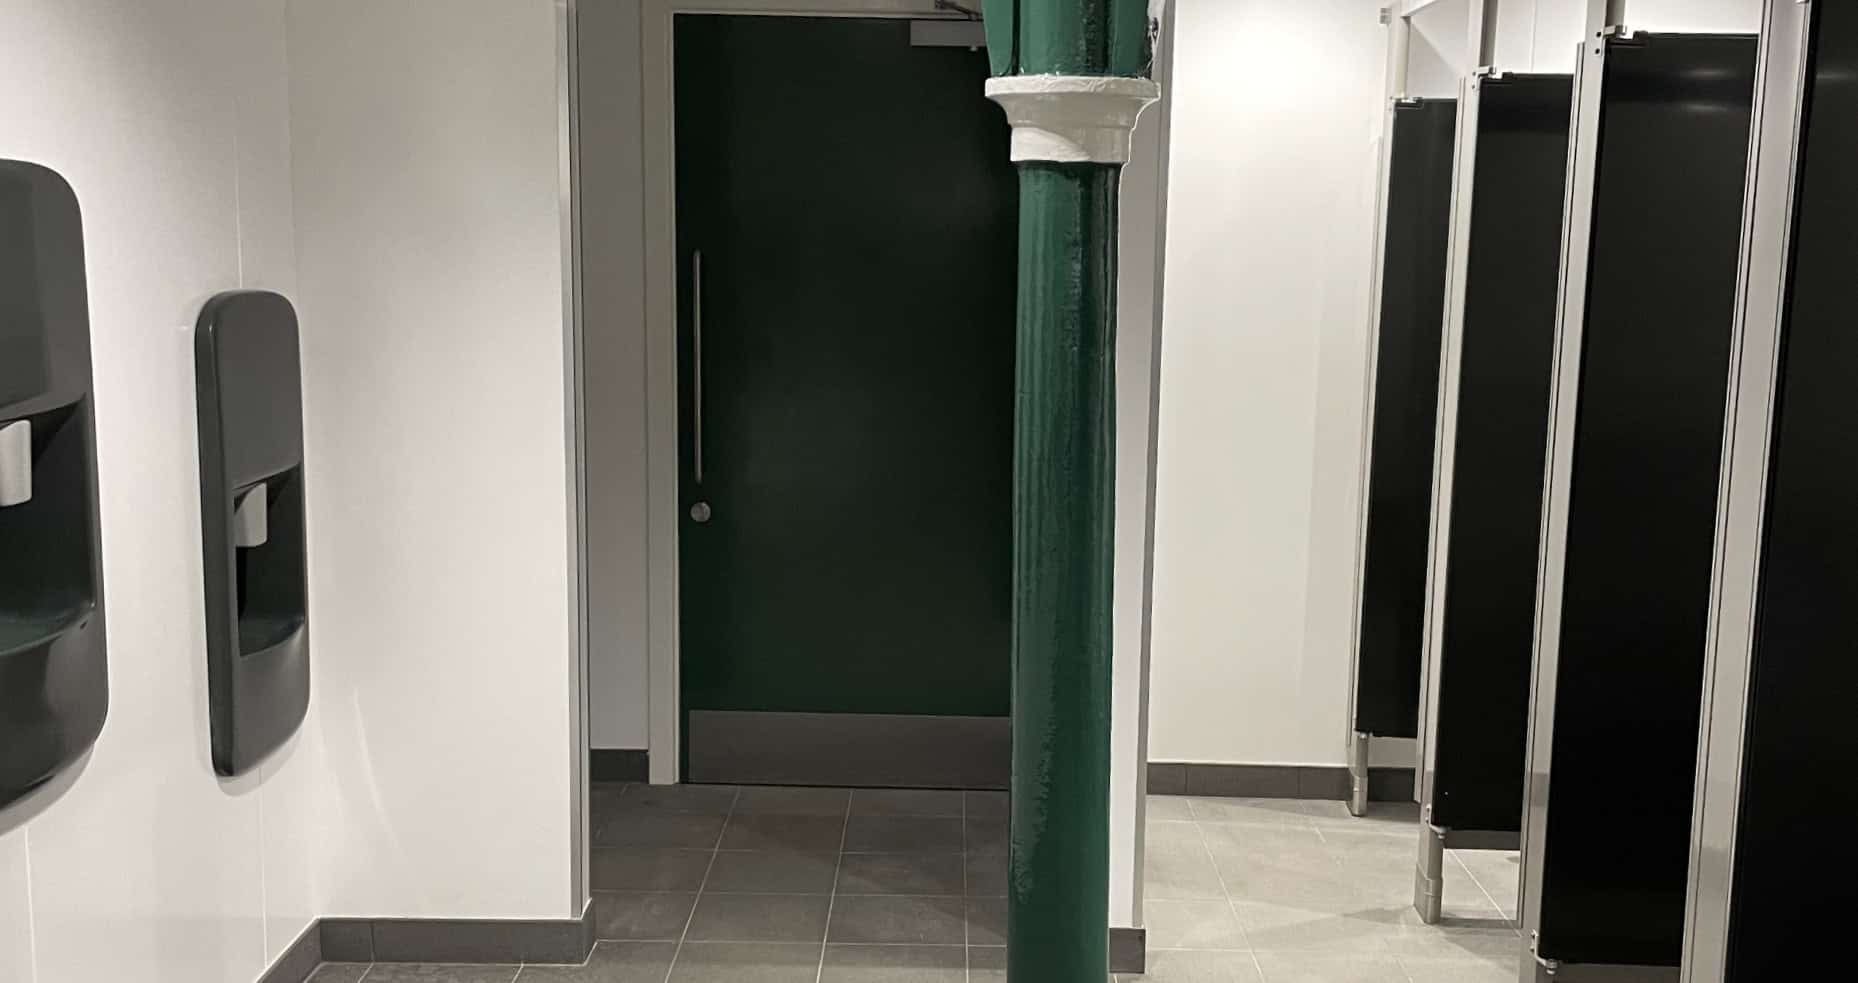 Inside Ryde's new public toilets